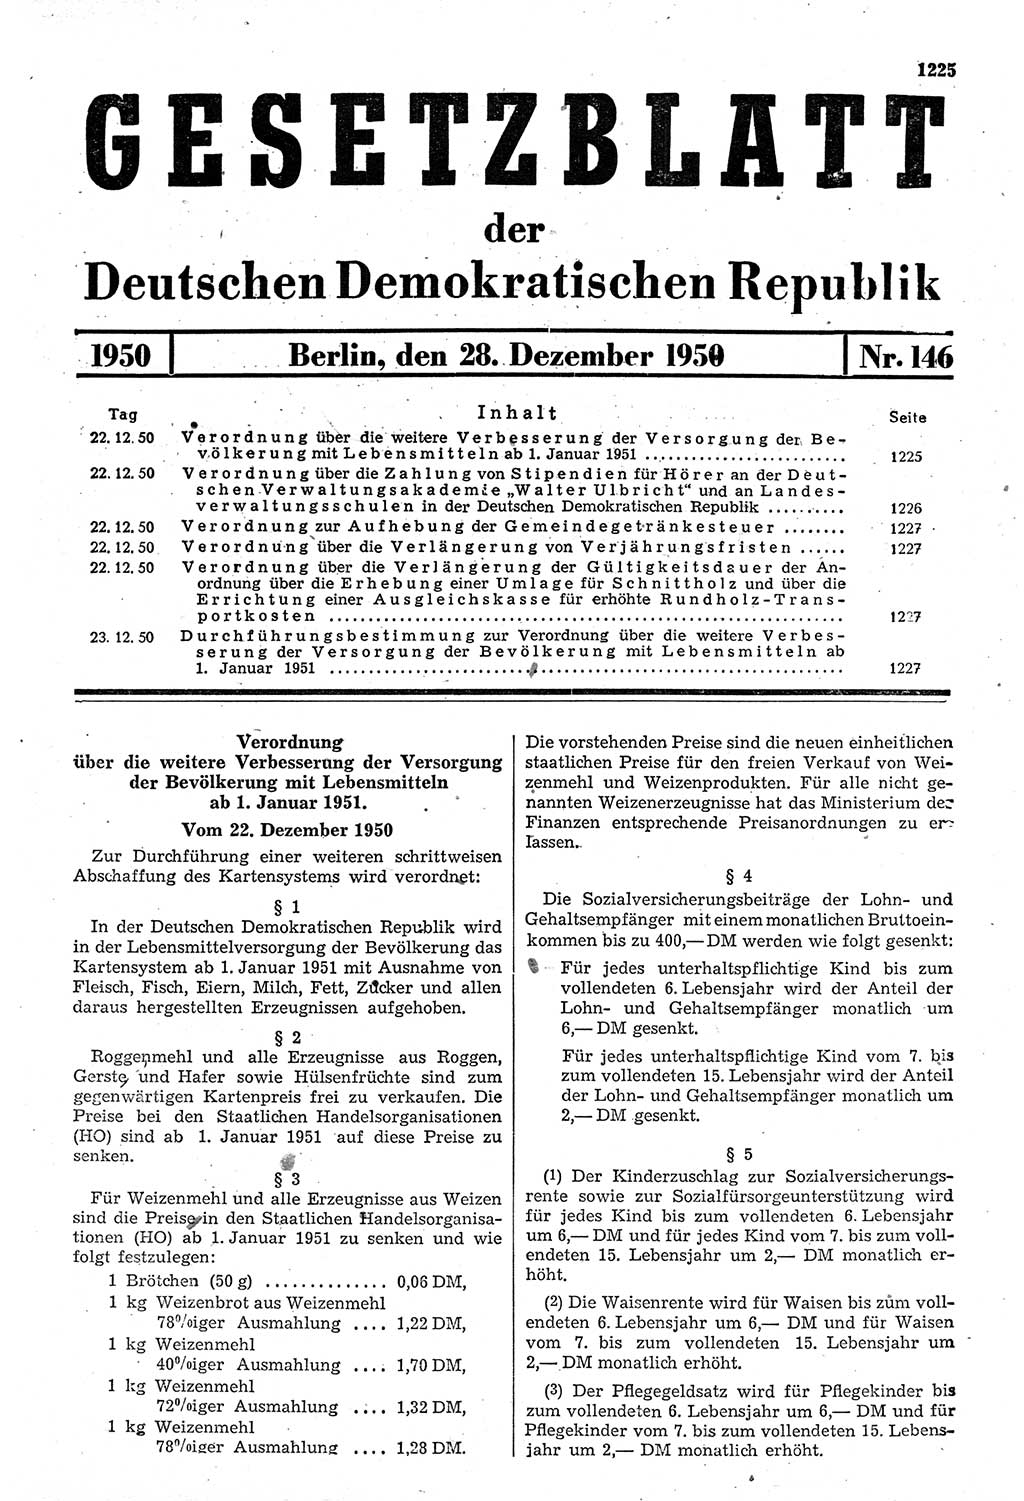 Gesetzblatt (GBl.) der Deutschen Demokratischen Republik (DDR) 1950, Seite 1225 (GBl. DDR 1950, S. 1225)